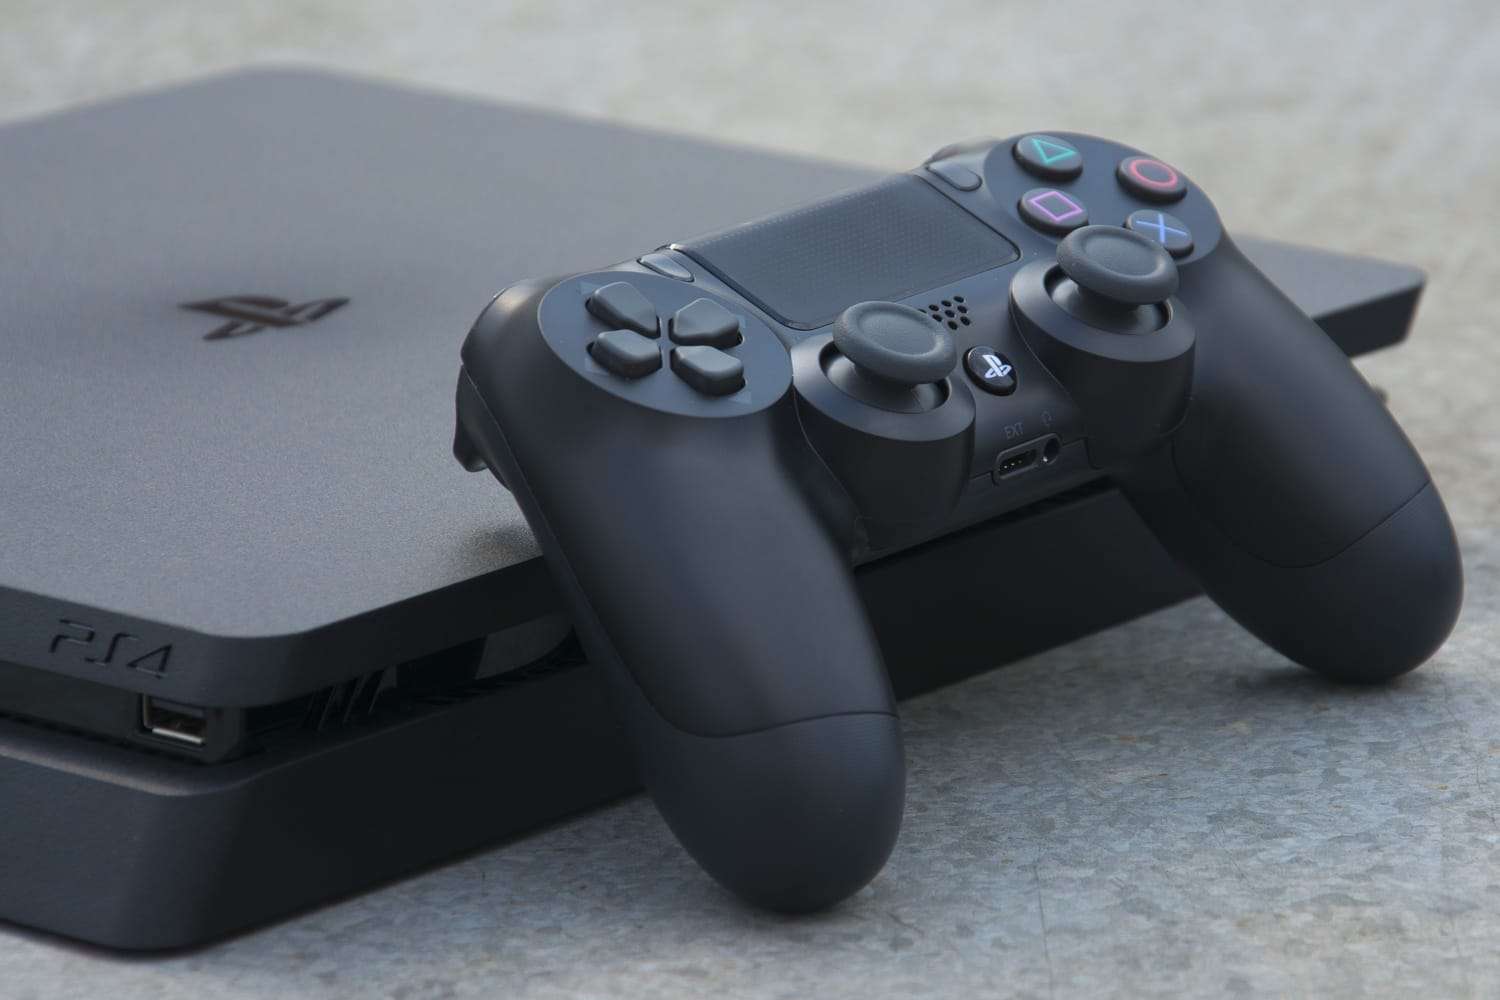 Какую консоль Sony PlayStation 4 купить: Slim или Pro?